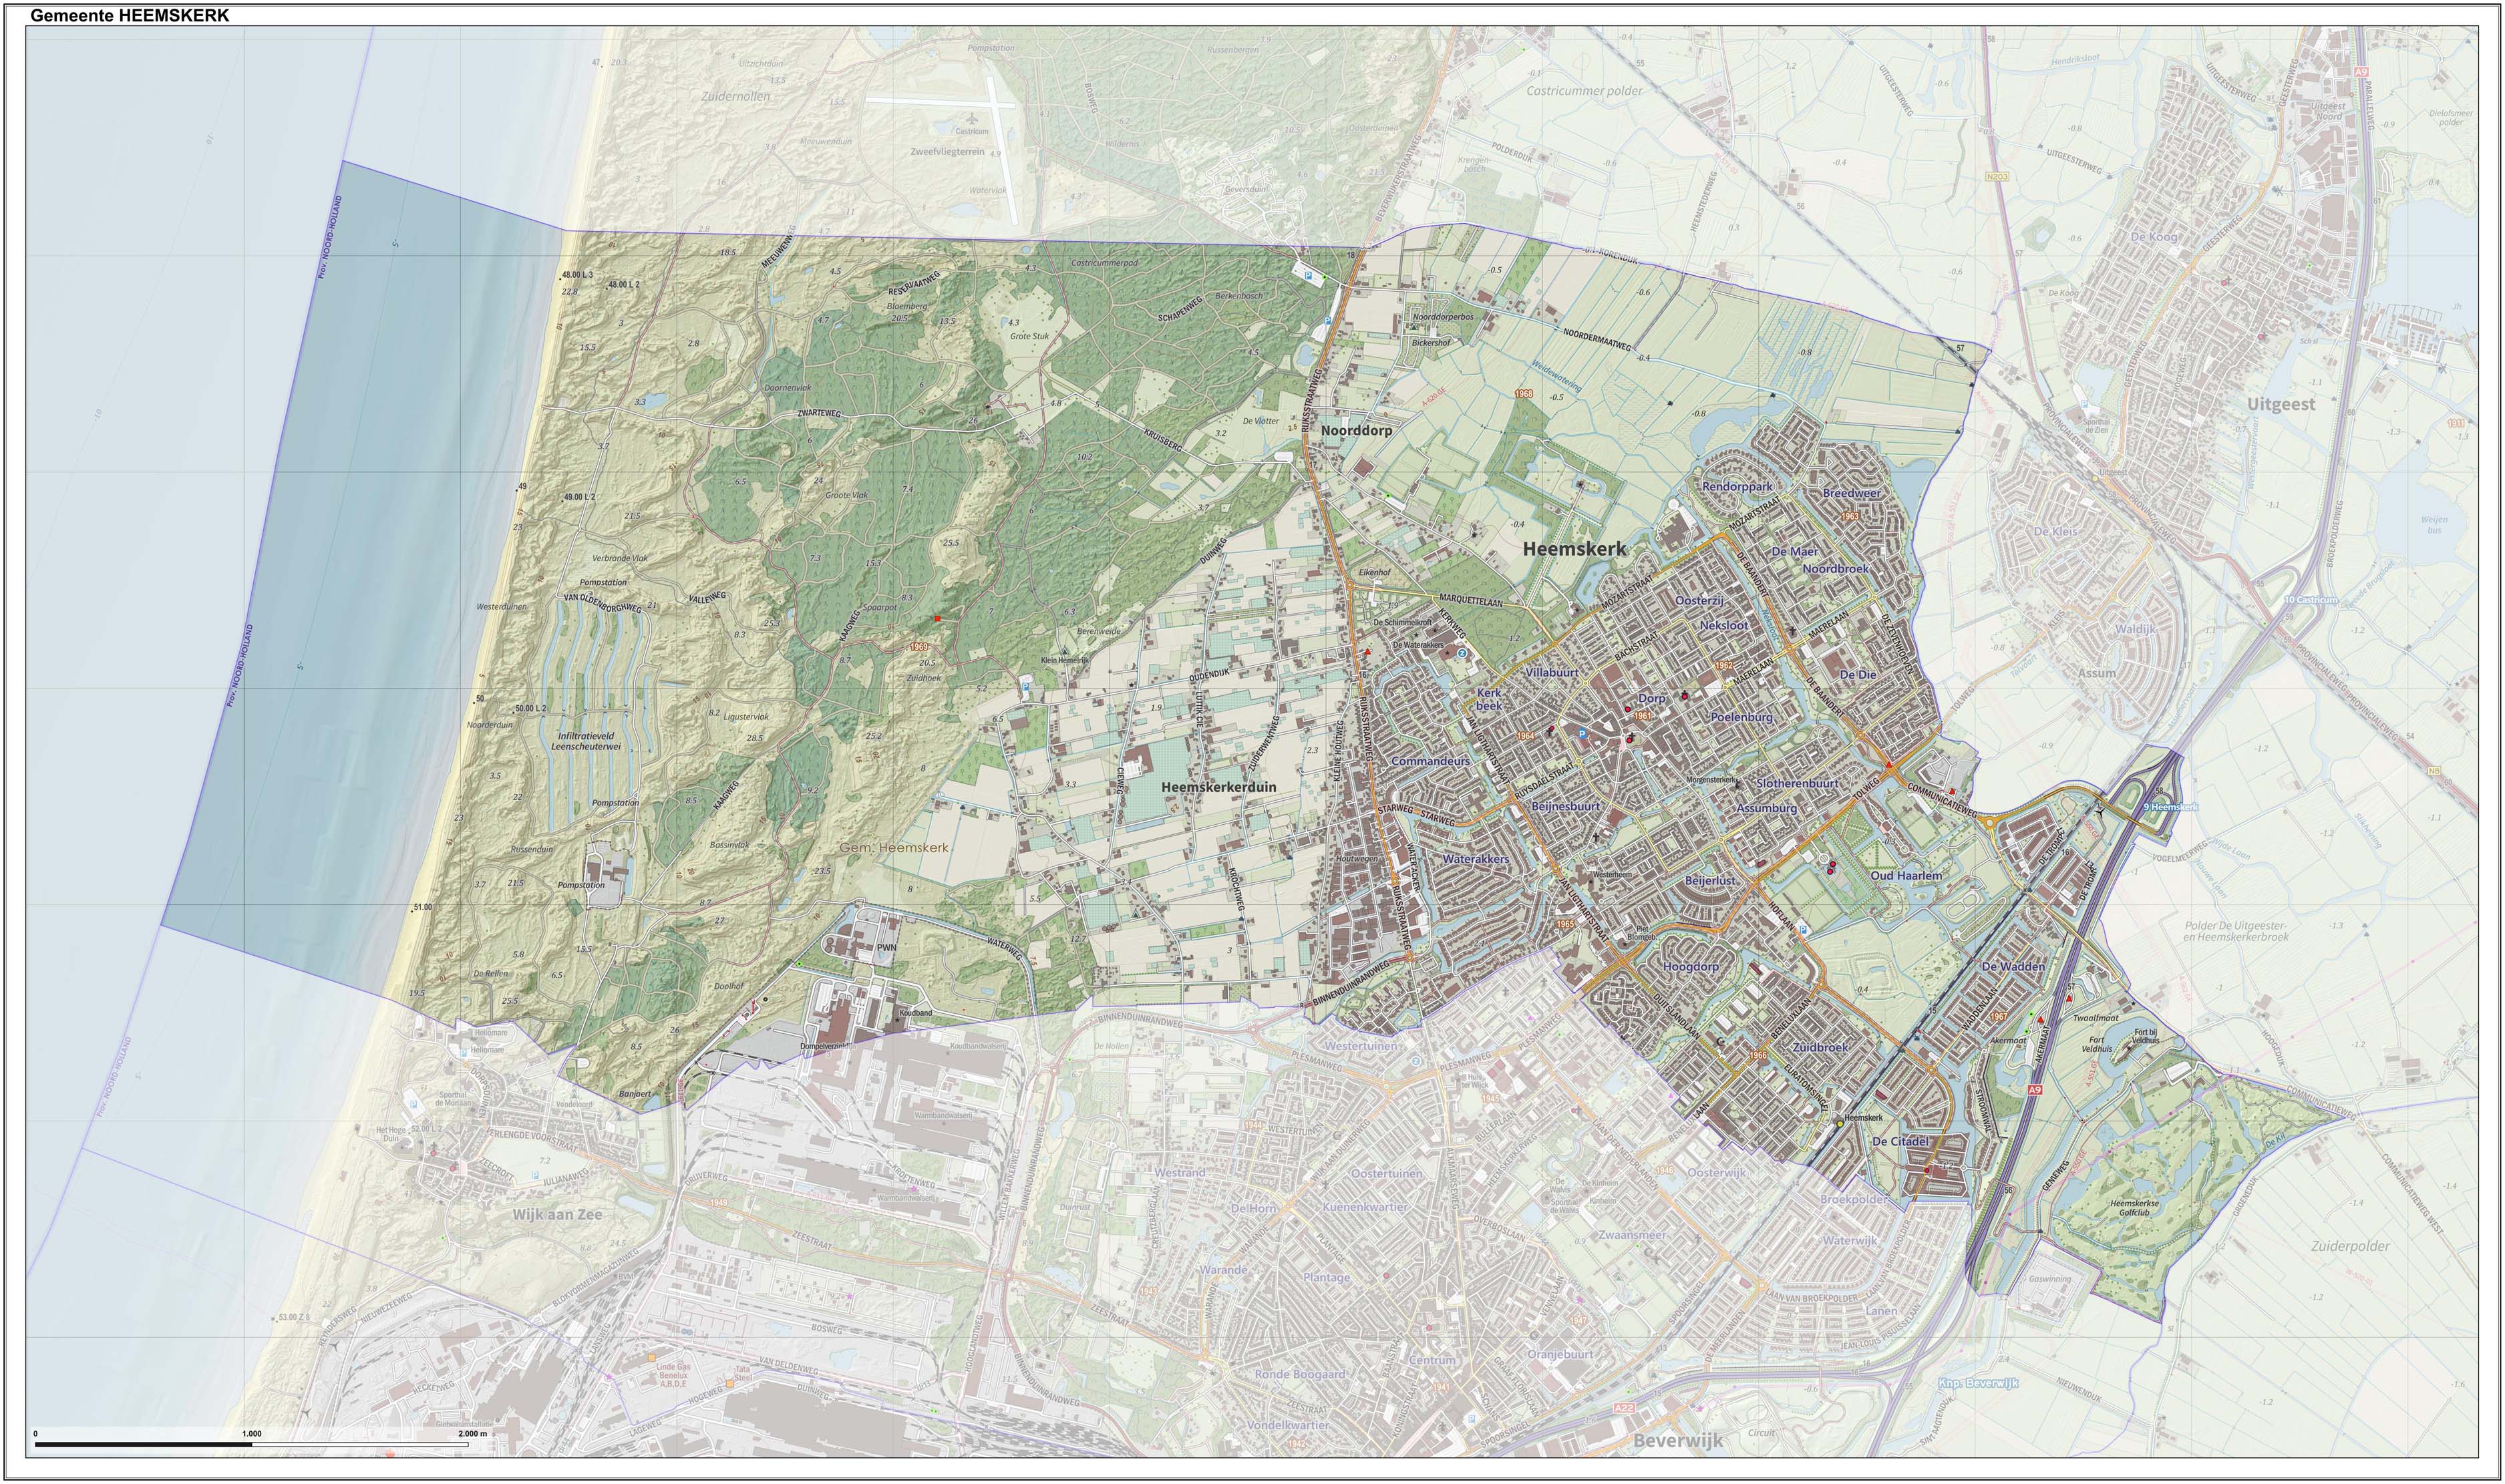 Dutch Topographic map of Heemskerk, June 2015